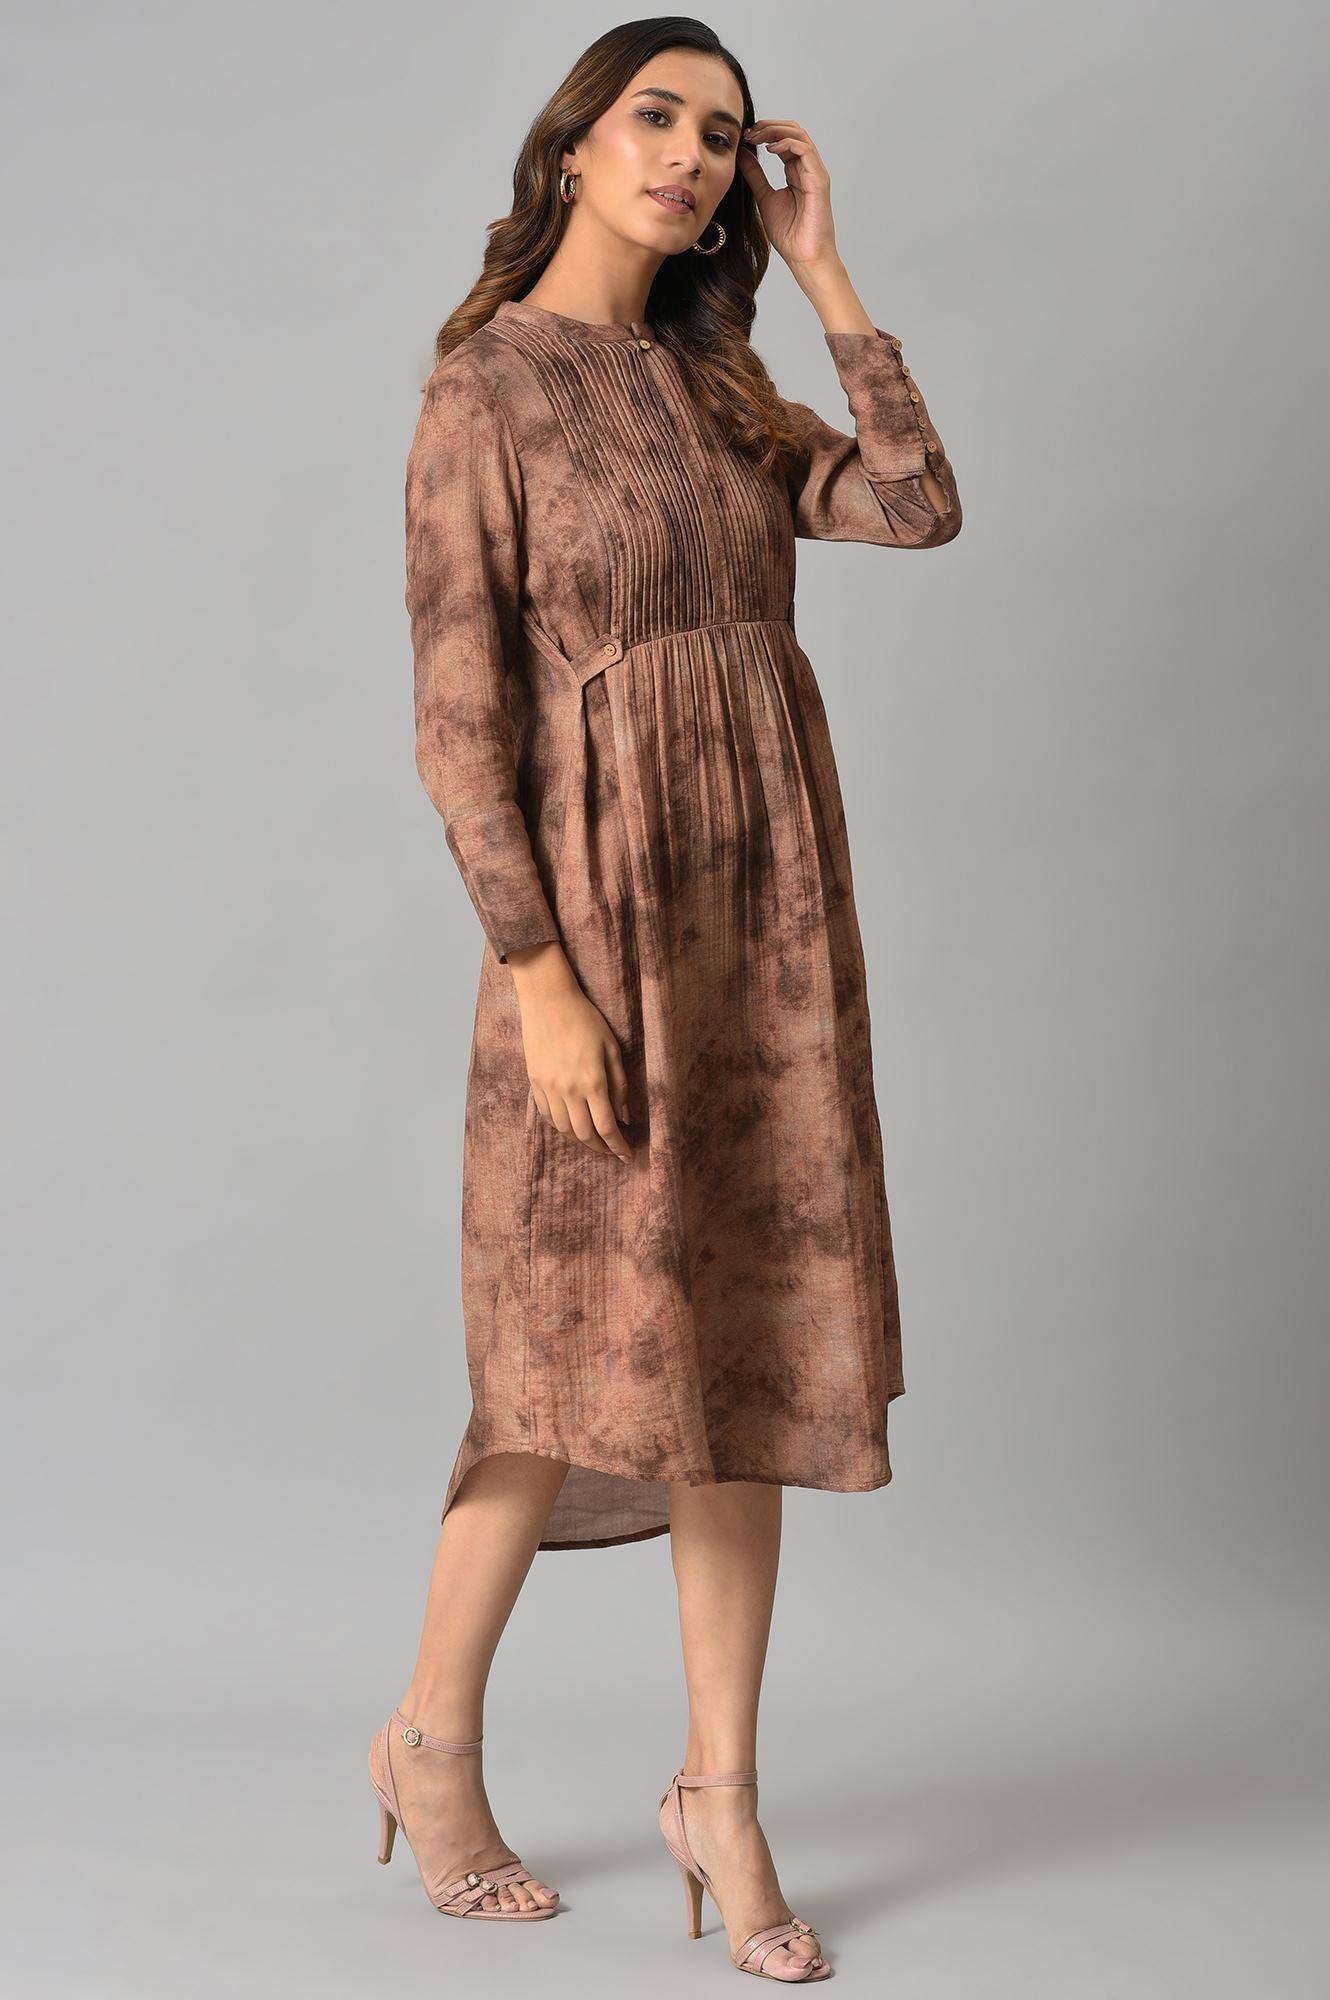 Dark Brown Abstract Printed Western Dress - wforwoman